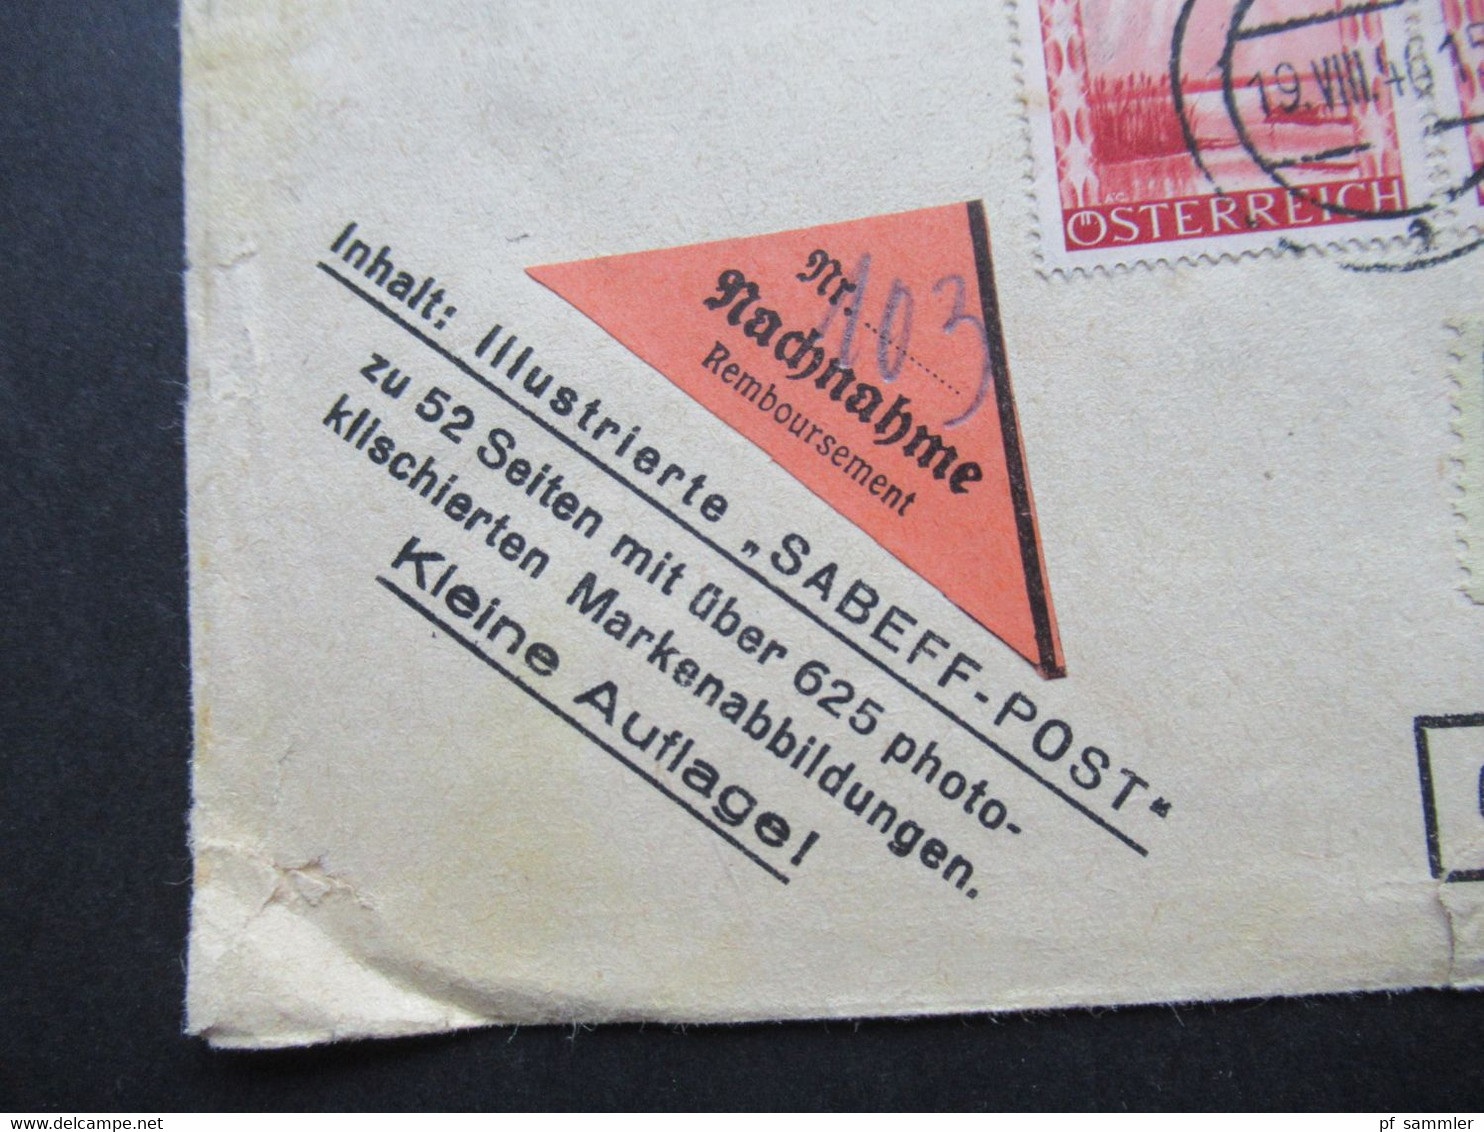 Österreich 1946 Drucksache Sabeff Post Einschreiben Wien 71 Nachnahme Frankiert Mit Landschaften Nr. 738 Und 753 (2) - Lettres & Documents